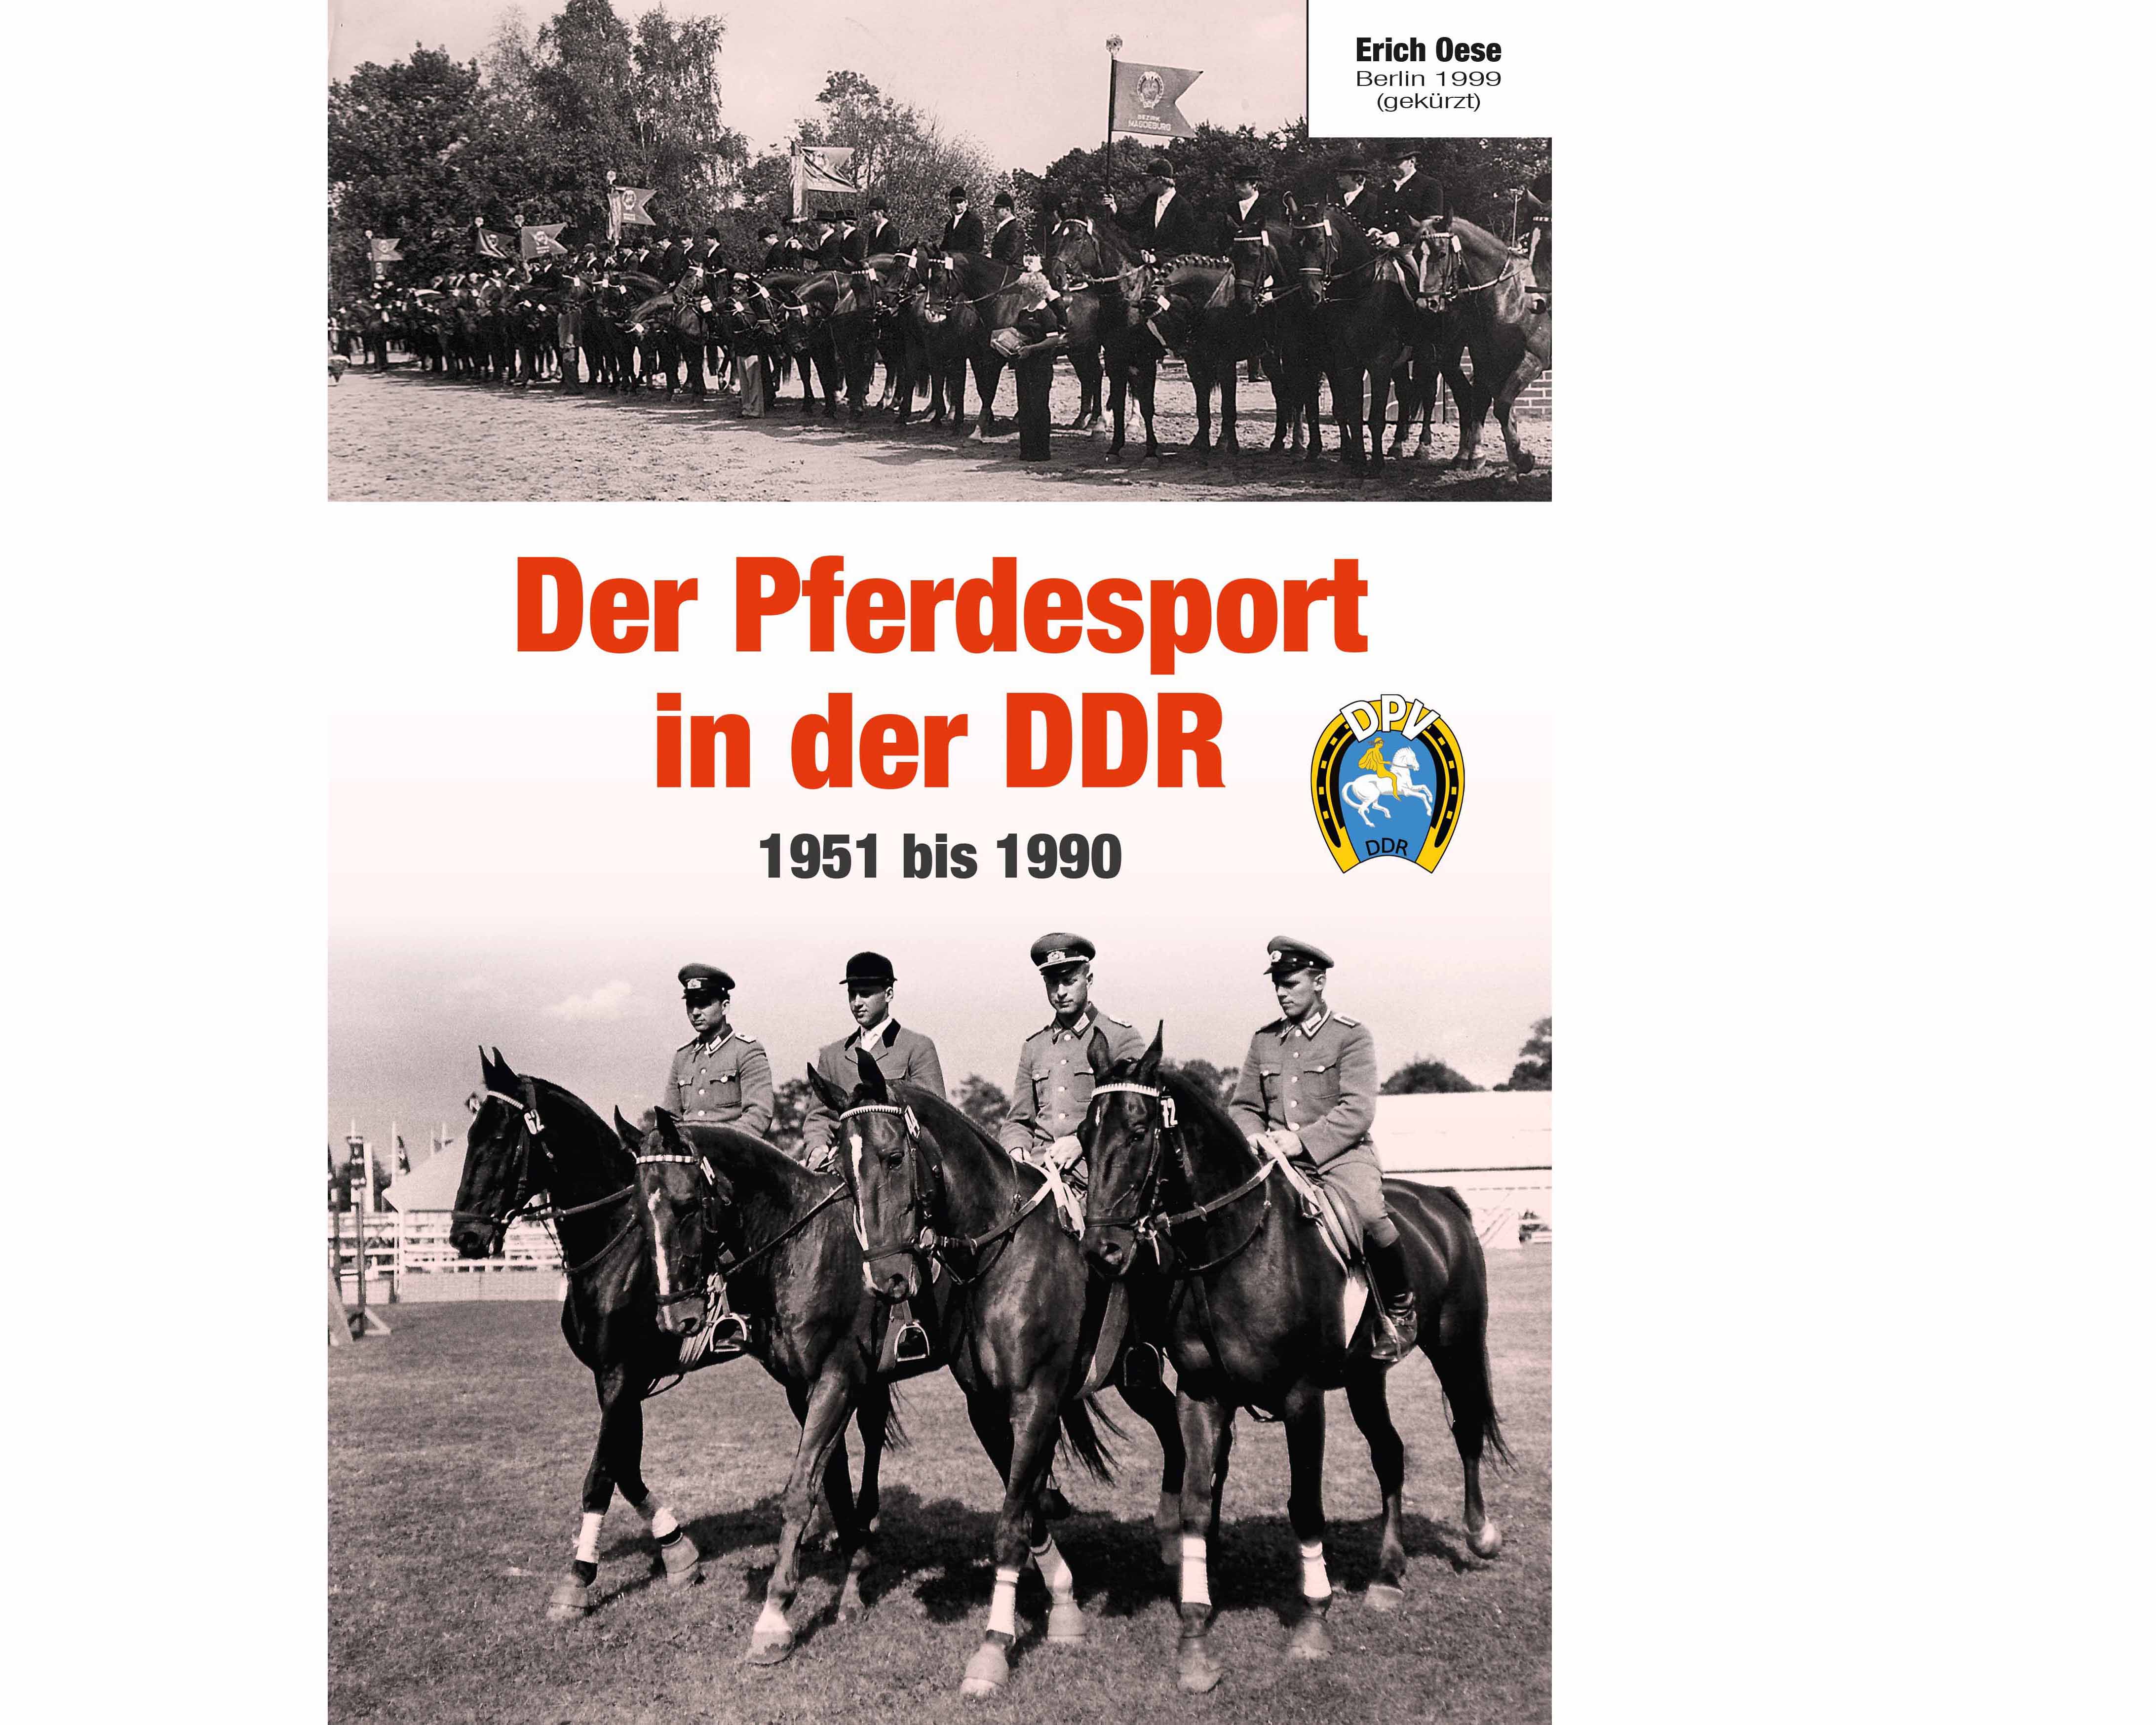 Pferdesport in der DDR von 1951 bis 1990